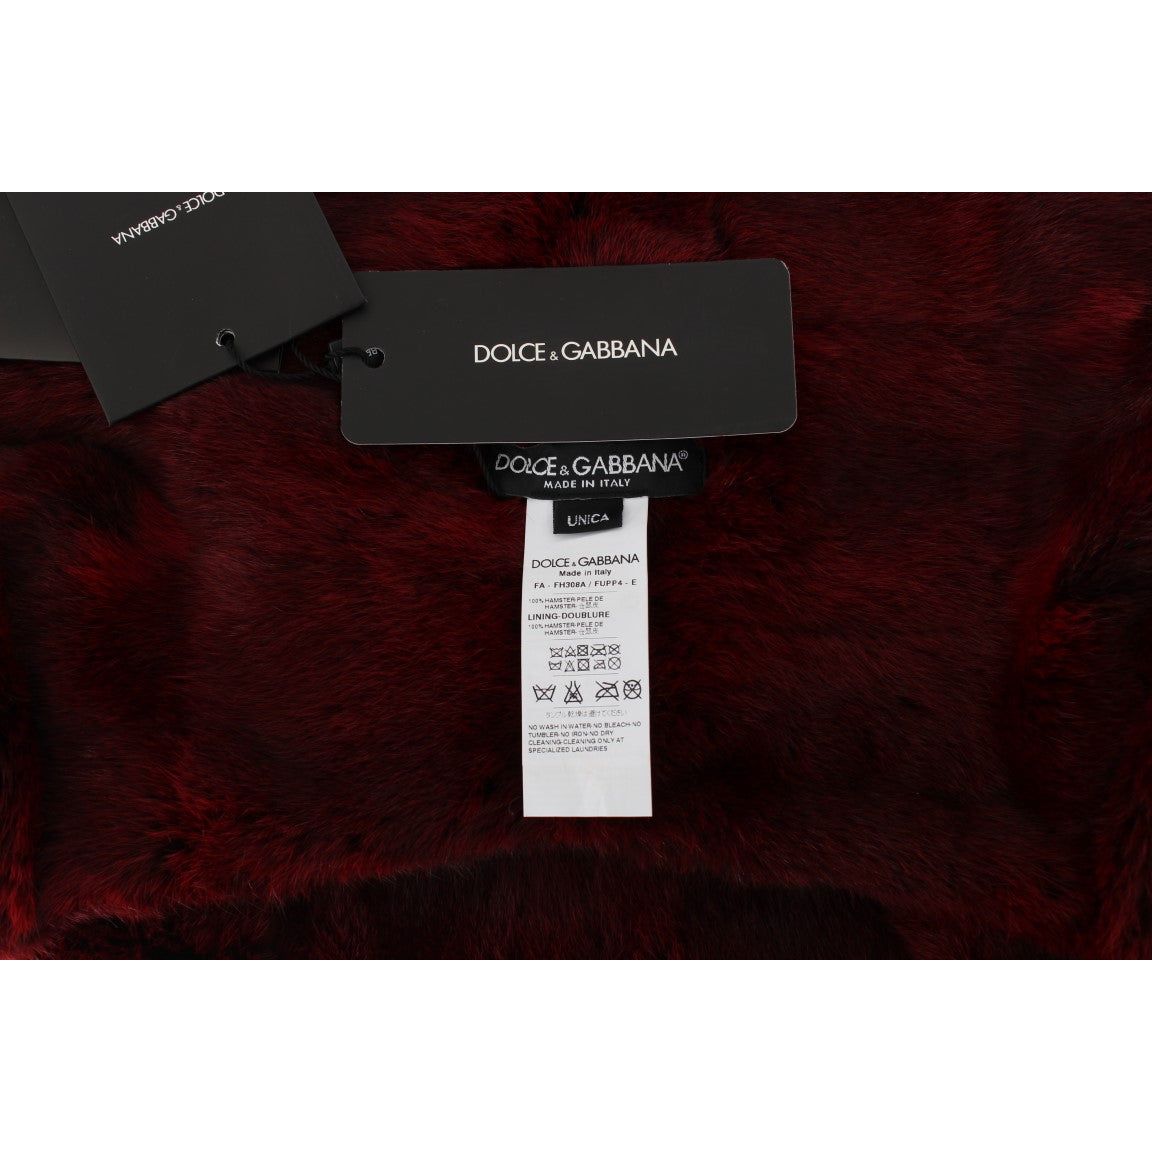 Dolce & Gabbana Luxurious Bordeaux Fur Hooded Scarf Wrap bordeaux-hamster-fur-crochet-hood-scarf-hat Hood Scarf 306431-bordeaux-hamster-fur-crochet-hood-scarf-hat-5.jpg